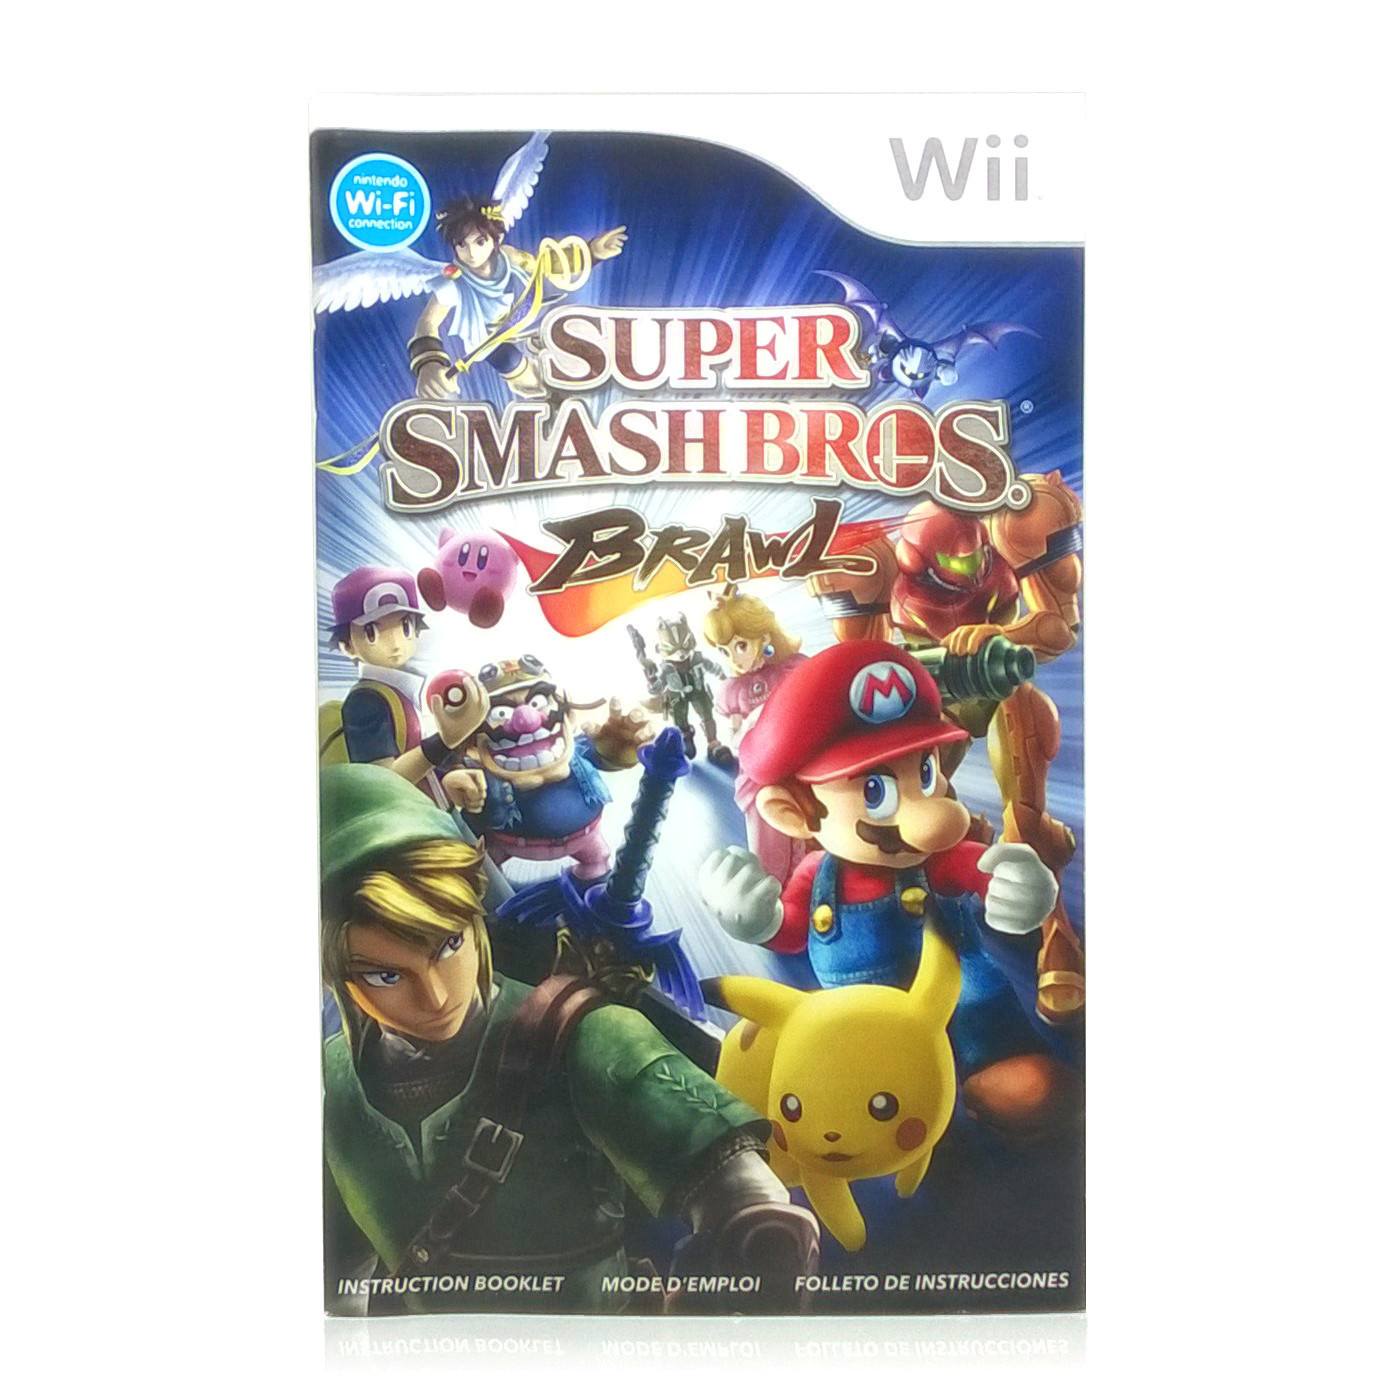 Super Smash Bros. Brawl Nintendo Wii Game - Manual